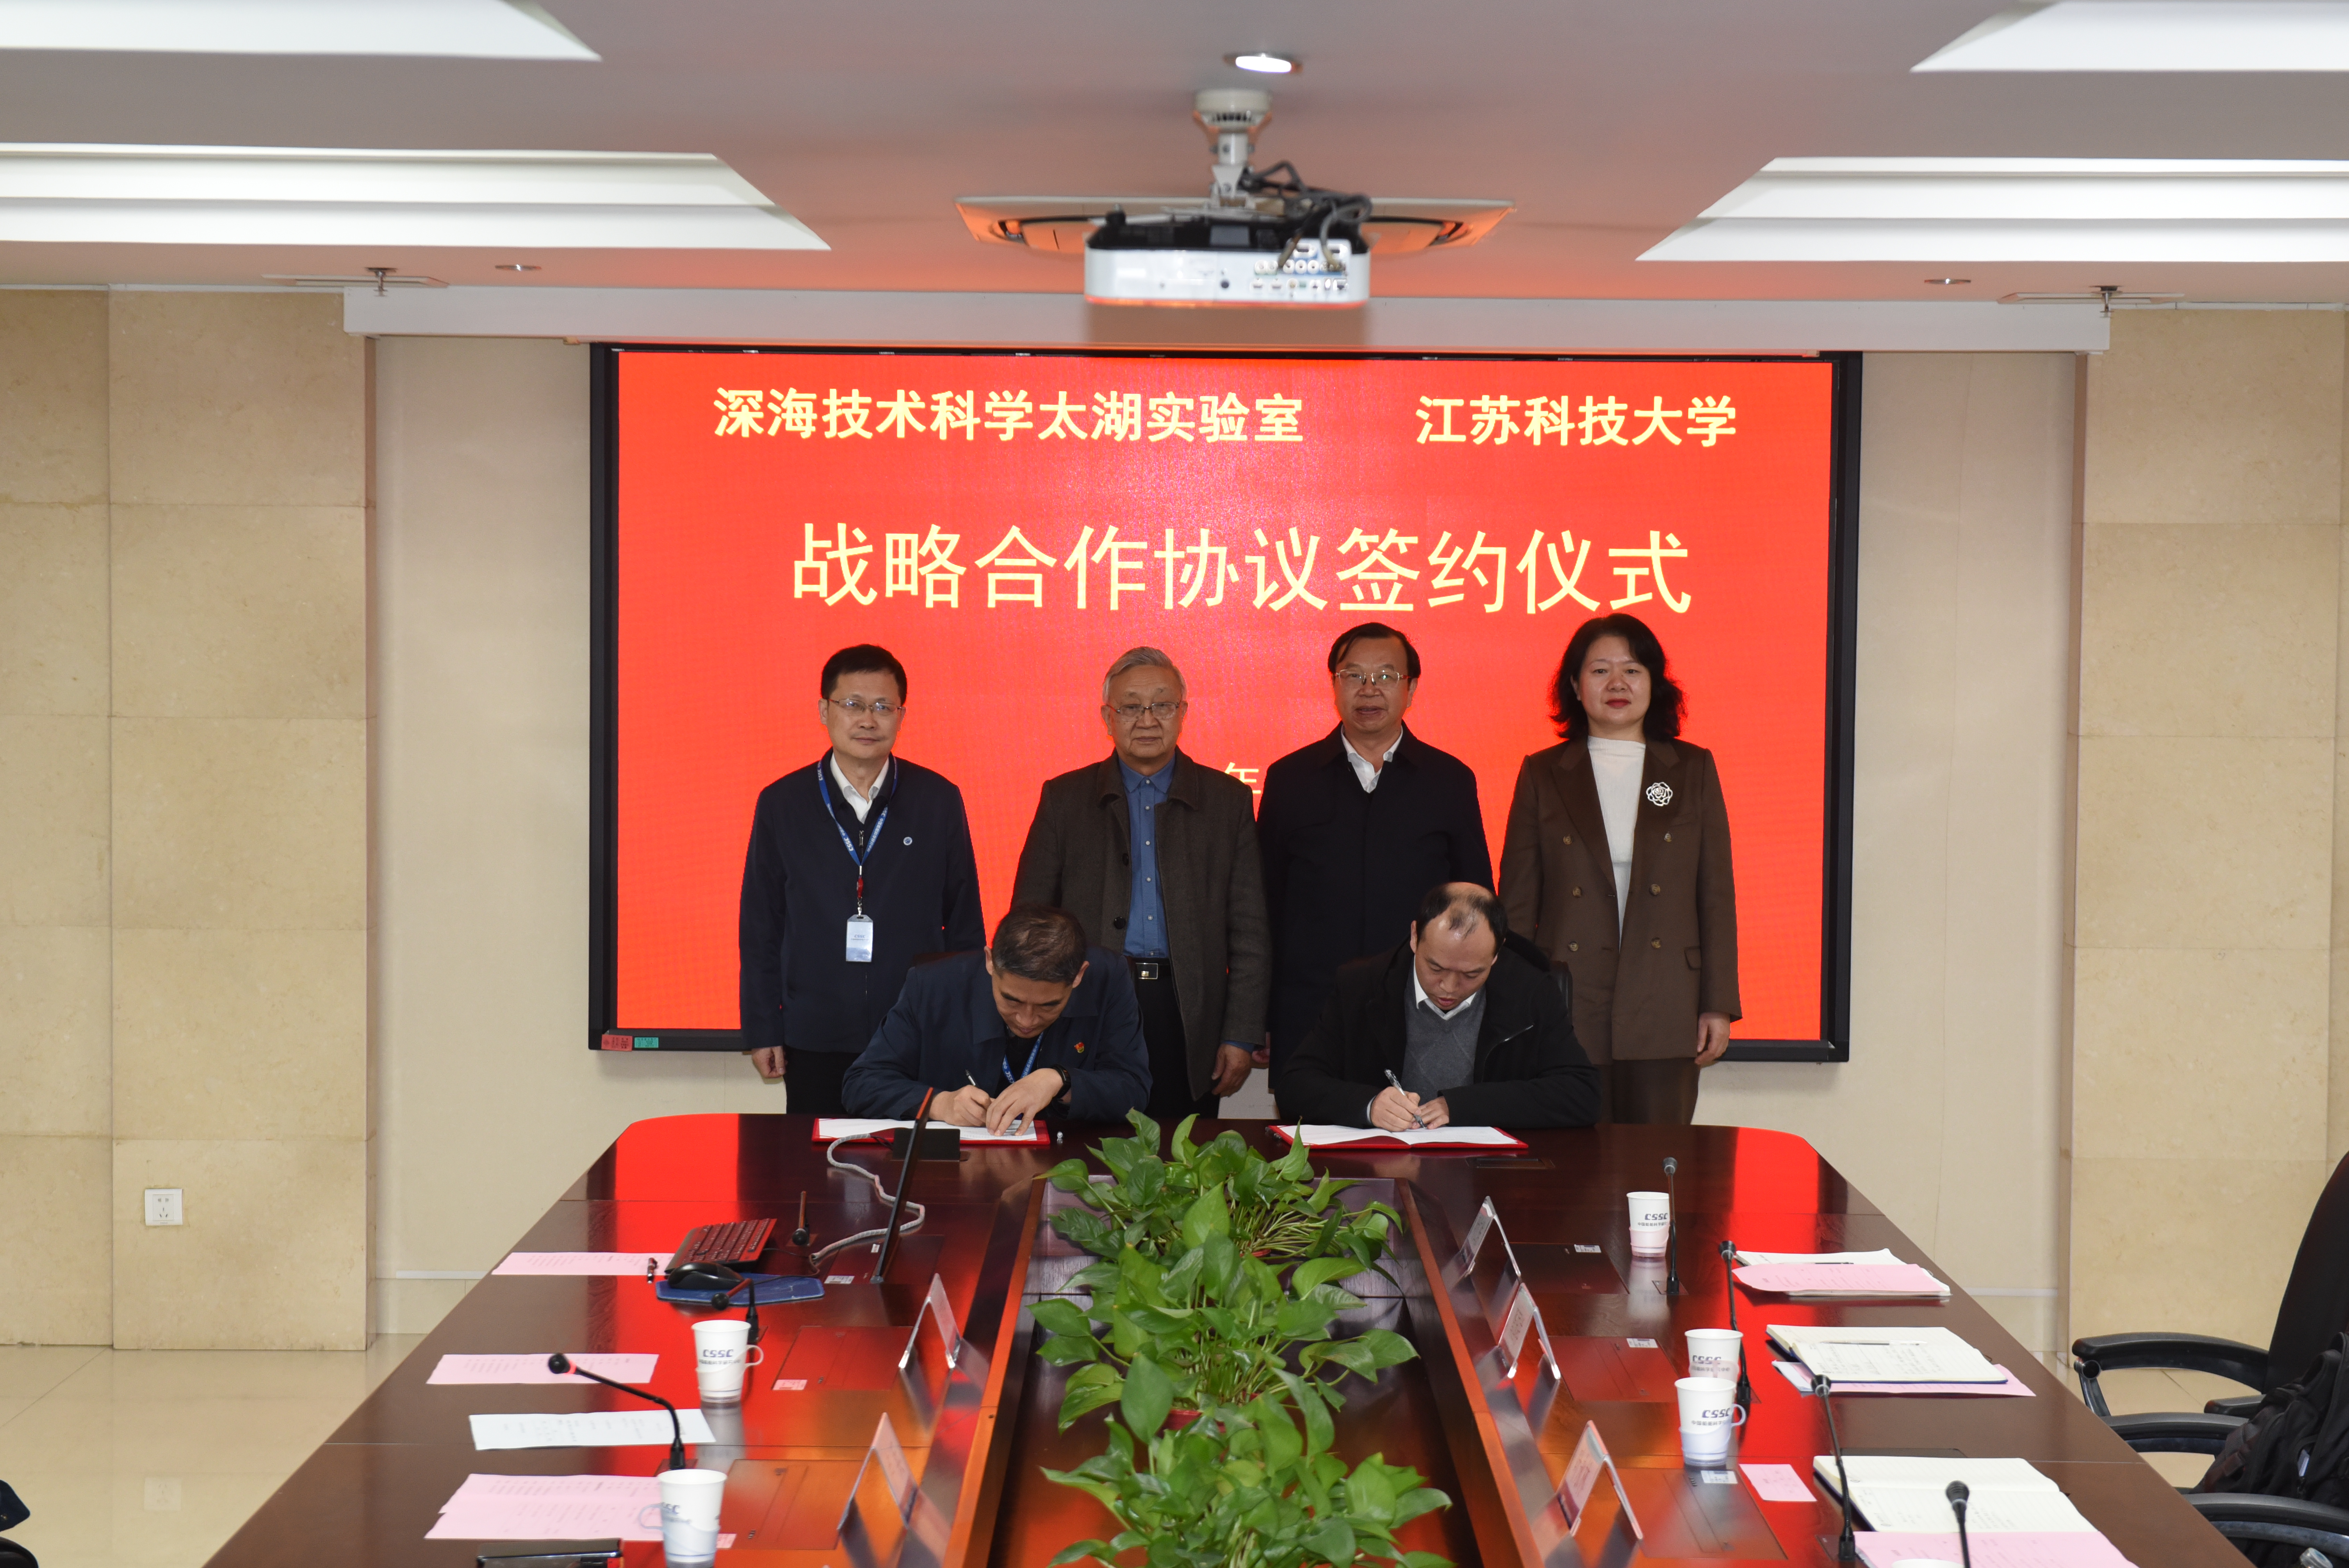 开运体育·(中国)有限公司官网与深海技术科学太湖实验室举行战略合作协议签约仪式3.jpg